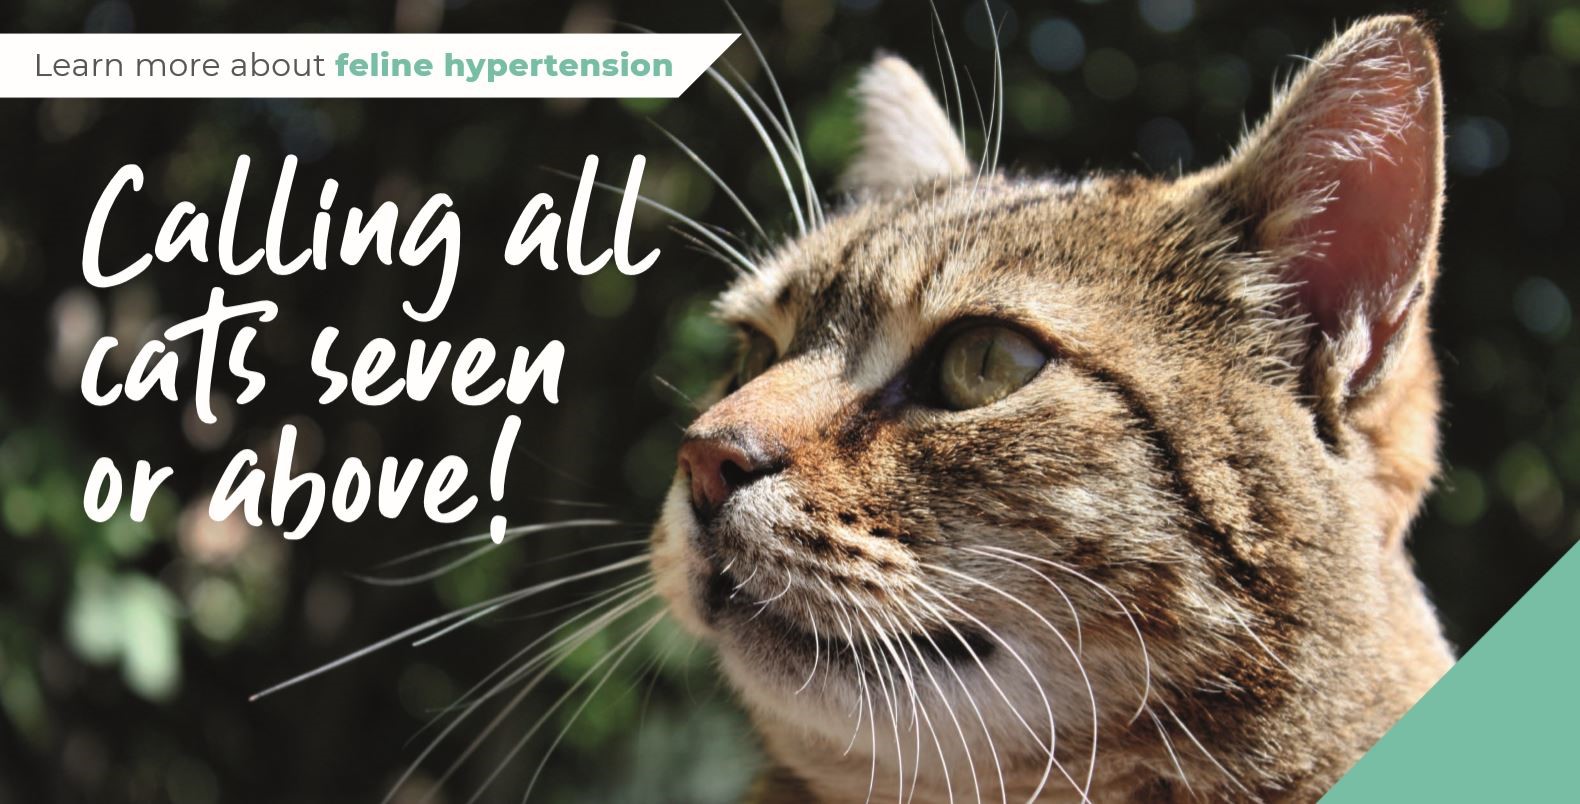 feline hypertension